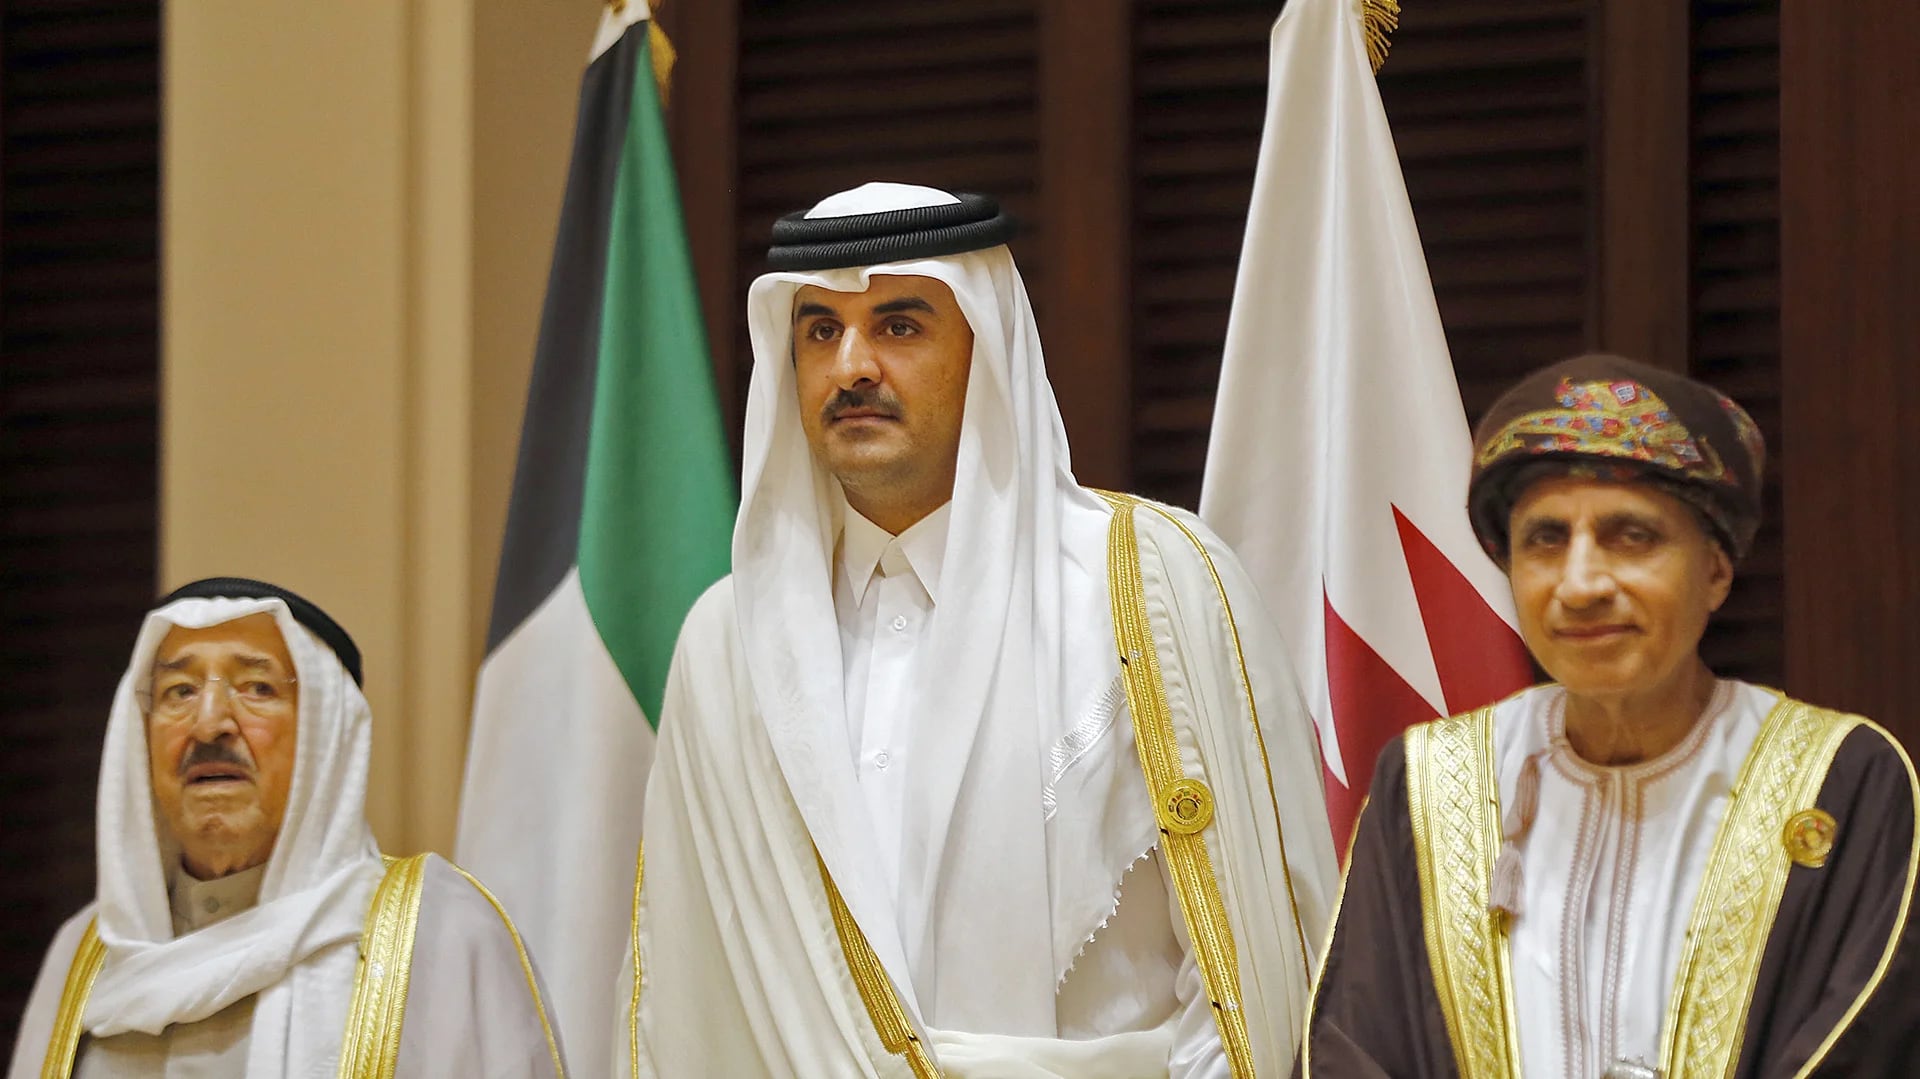 El emir de Qatar, Tanim bin Hamad al Thani, rodeado por el emir de Kuwait –a su derecha–, Sabah al Ahmad al Jaber al Sabah, y el ministro de Exteriores de Omán –a su izquierda–, Yusuf bin Alawi, durante una reunión del CCG. Omán y Kuwait no se sumaron al bloqueo de Qatar (AFP)